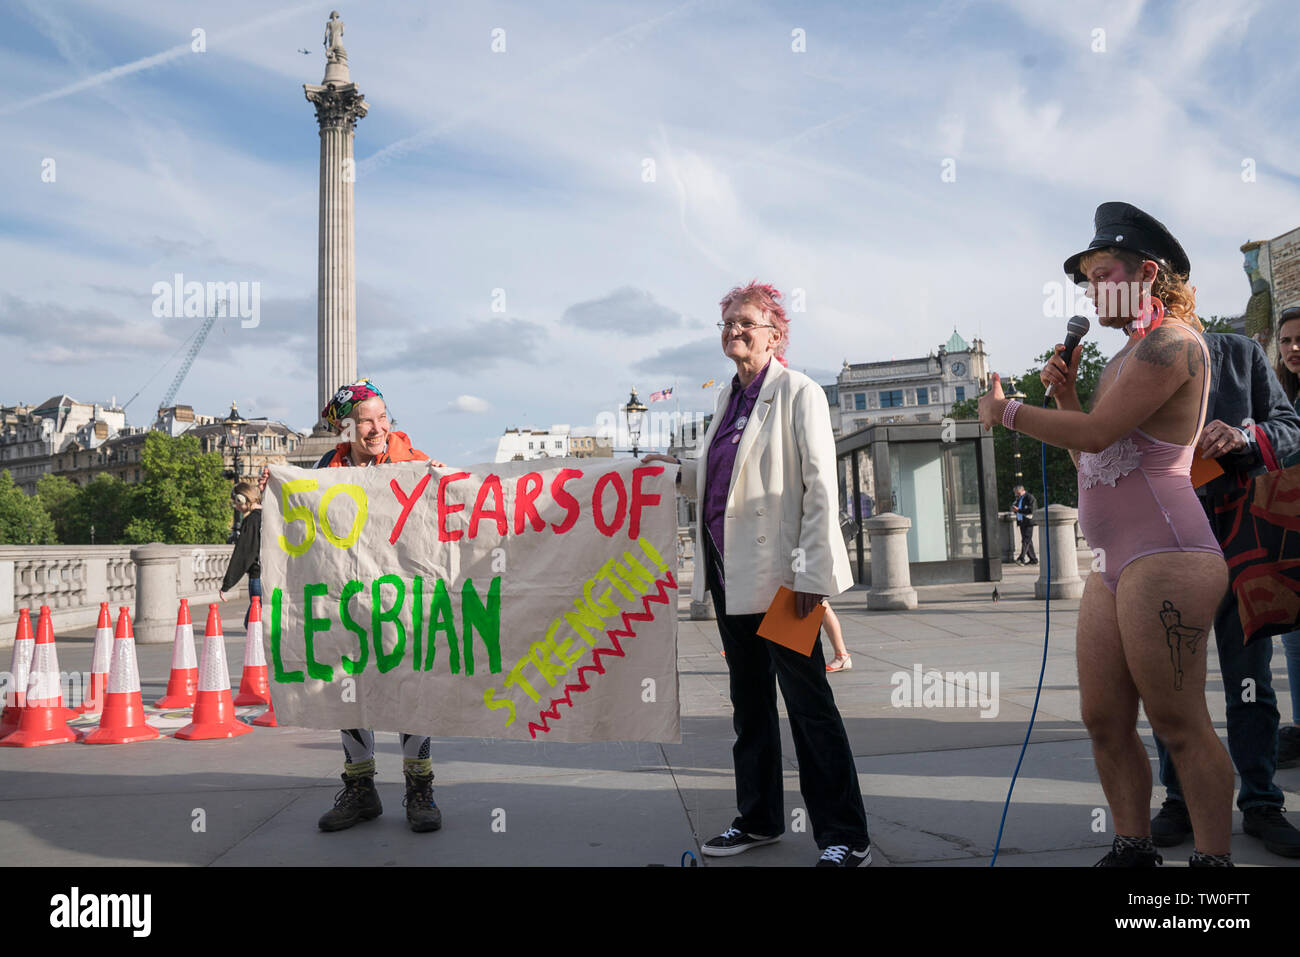 17 giugno 2019, Trafalgar Square, Londra : gli attivisti si riuniscono in Trafalgar Square, Londra per contrassegnare la Stonewall cinquantesimo anniversario con alcuni originali elementi GLF e nuovi attivisti, ricreato il primo orgoglio mai indietro nel 1972 e ha annunciato un nuovo insieme di richieste di orgoglio 2020: UN NUOVO ACCORDO CIRCA EVENTI PRIDE PER UN NUOVO MONDO età, compresa quella di orgoglio essere libero e una protesta. GLF originale membri includono Miqx Kannemeyer, Don Pepe, Ted Brown, Andrew Lumsden, Nettie Pollard e Stuart giù gli altri altoparlanti includono Russell Christie, Dan Vetro, Dani Dinger, Naomi Bourne e cantante Alex Giove Foto Stock